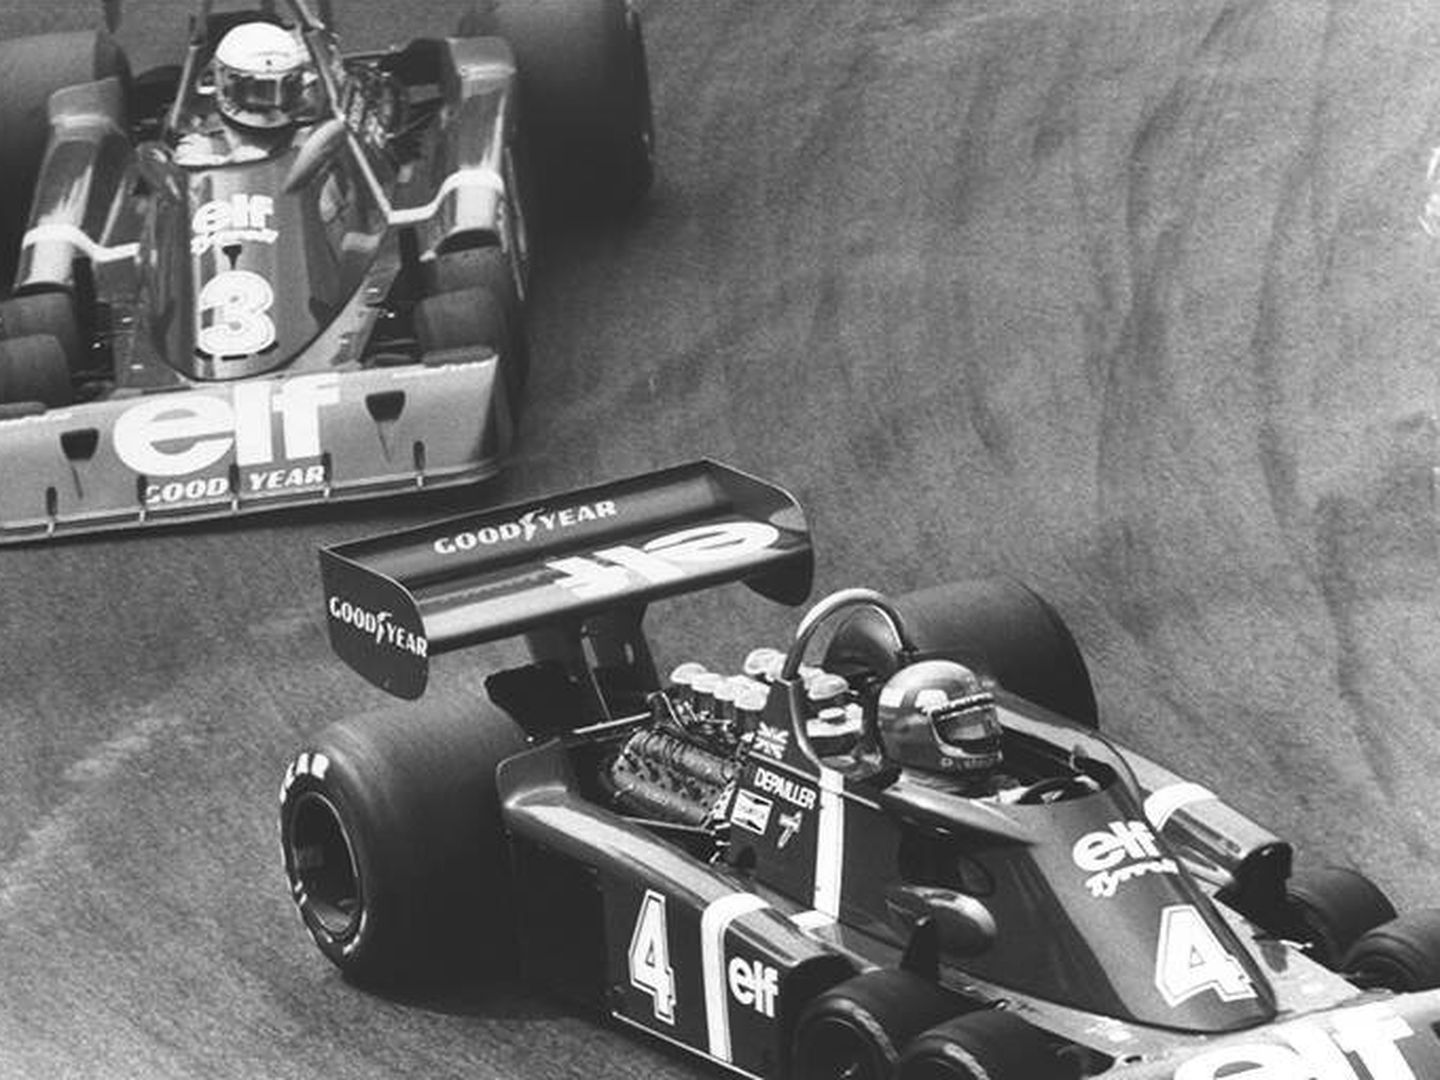 La petrolera ELF tuvo un protagonismo extraordinario décadas atrás en la Fórmula 1, del que ya no queda nada (Goodyear)